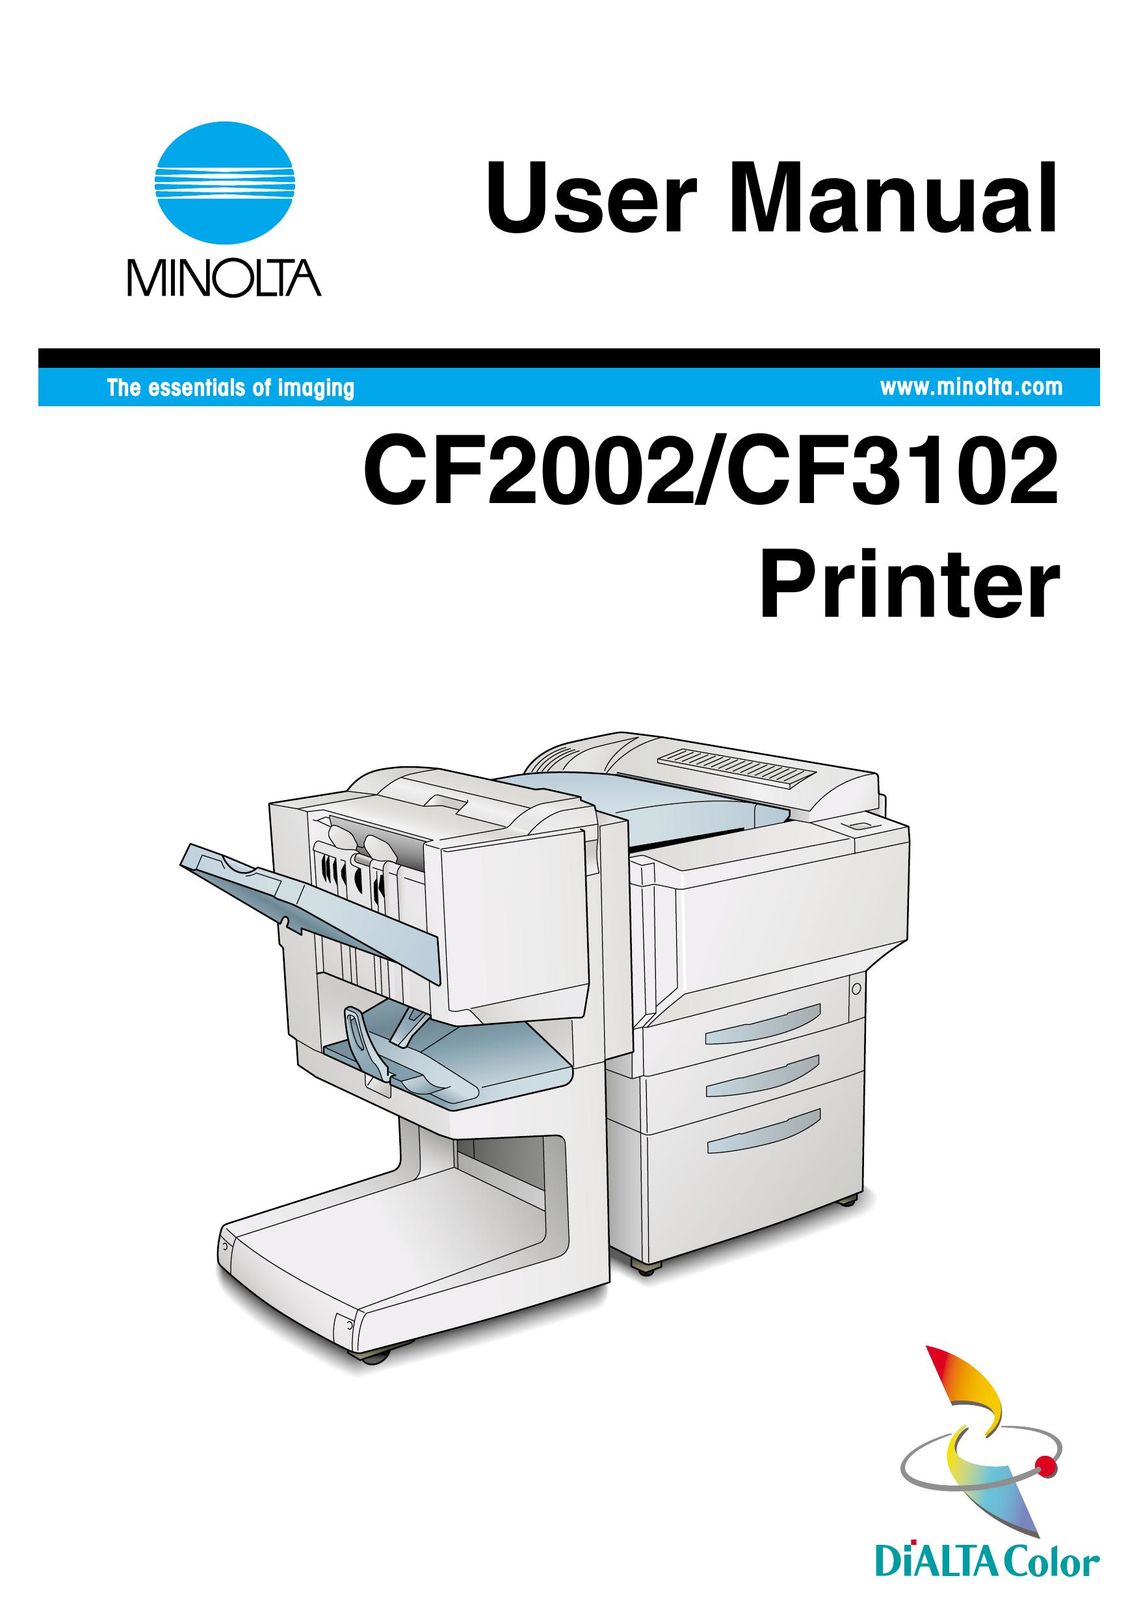 Breadman CF3102 Printer User Manual